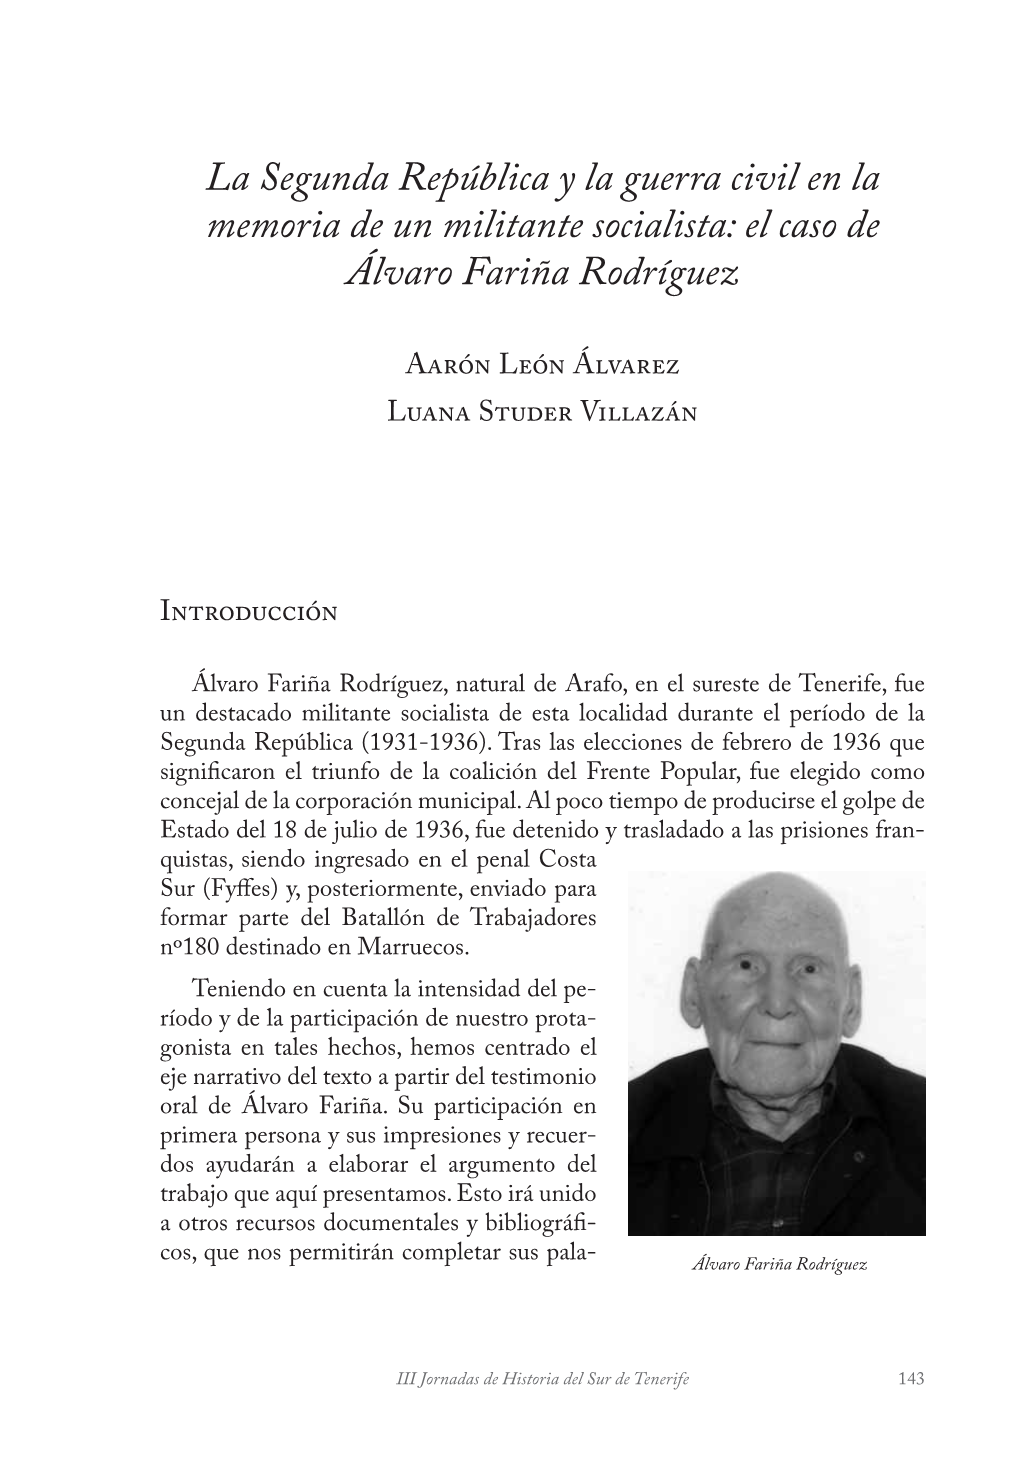 La Segunda República Y La Guerra Civil En La Memoria De Un Militante Socialista: El Caso De Álvaro Fariña Rodríguez